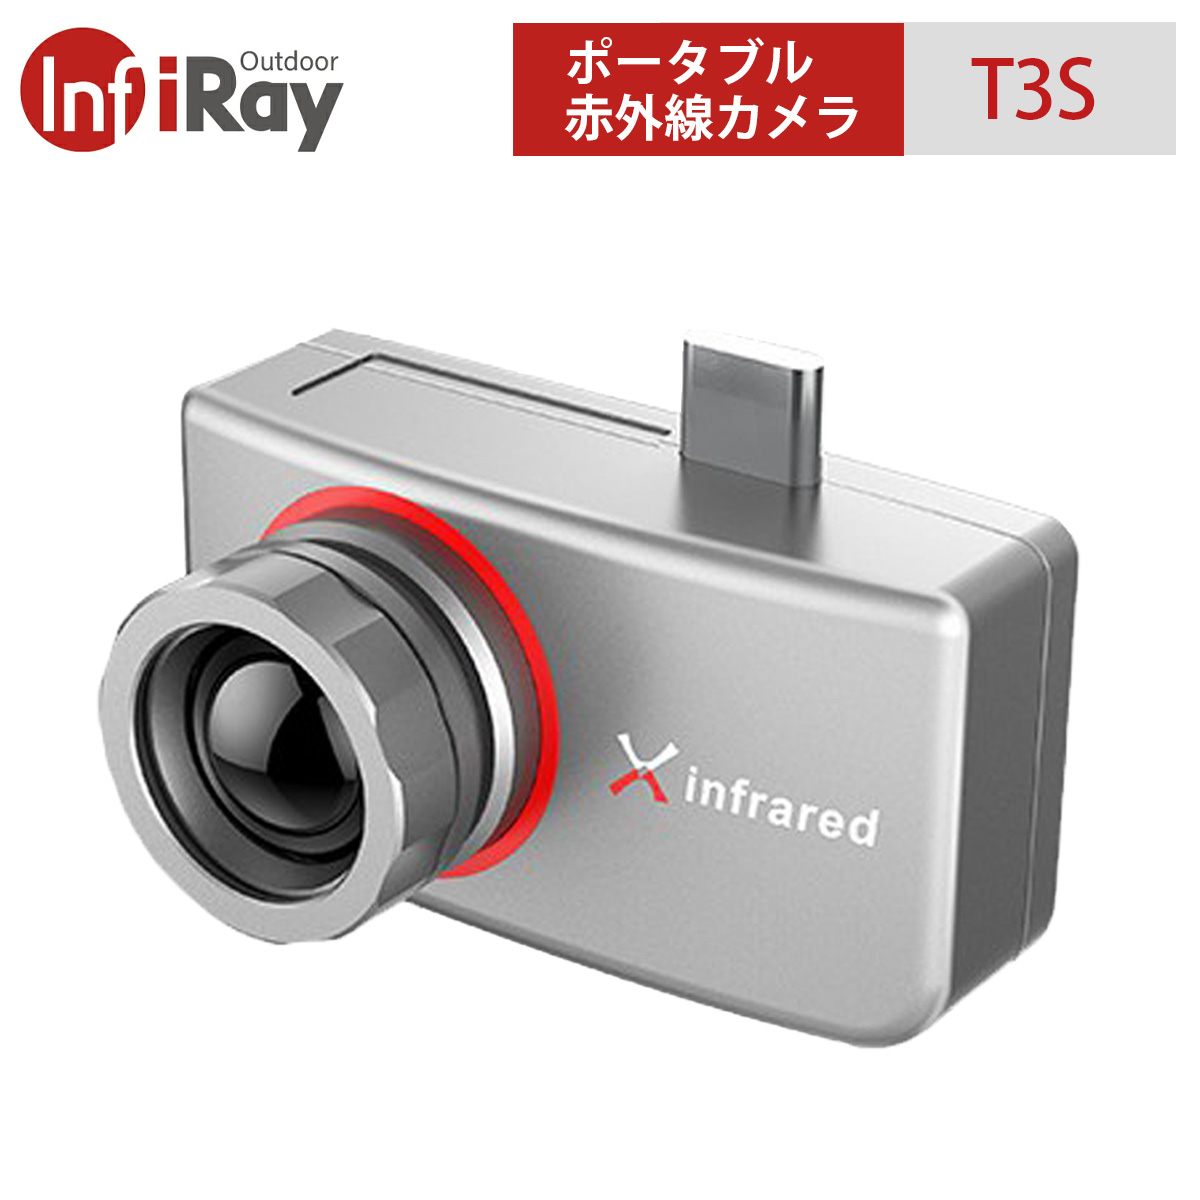 新作多数 Iray Xtherm シリーズ T3s サーマルイメージングカメラ 赤外線カメラ Androidスマホにusb C接続 録画可能 Fucoa Cl